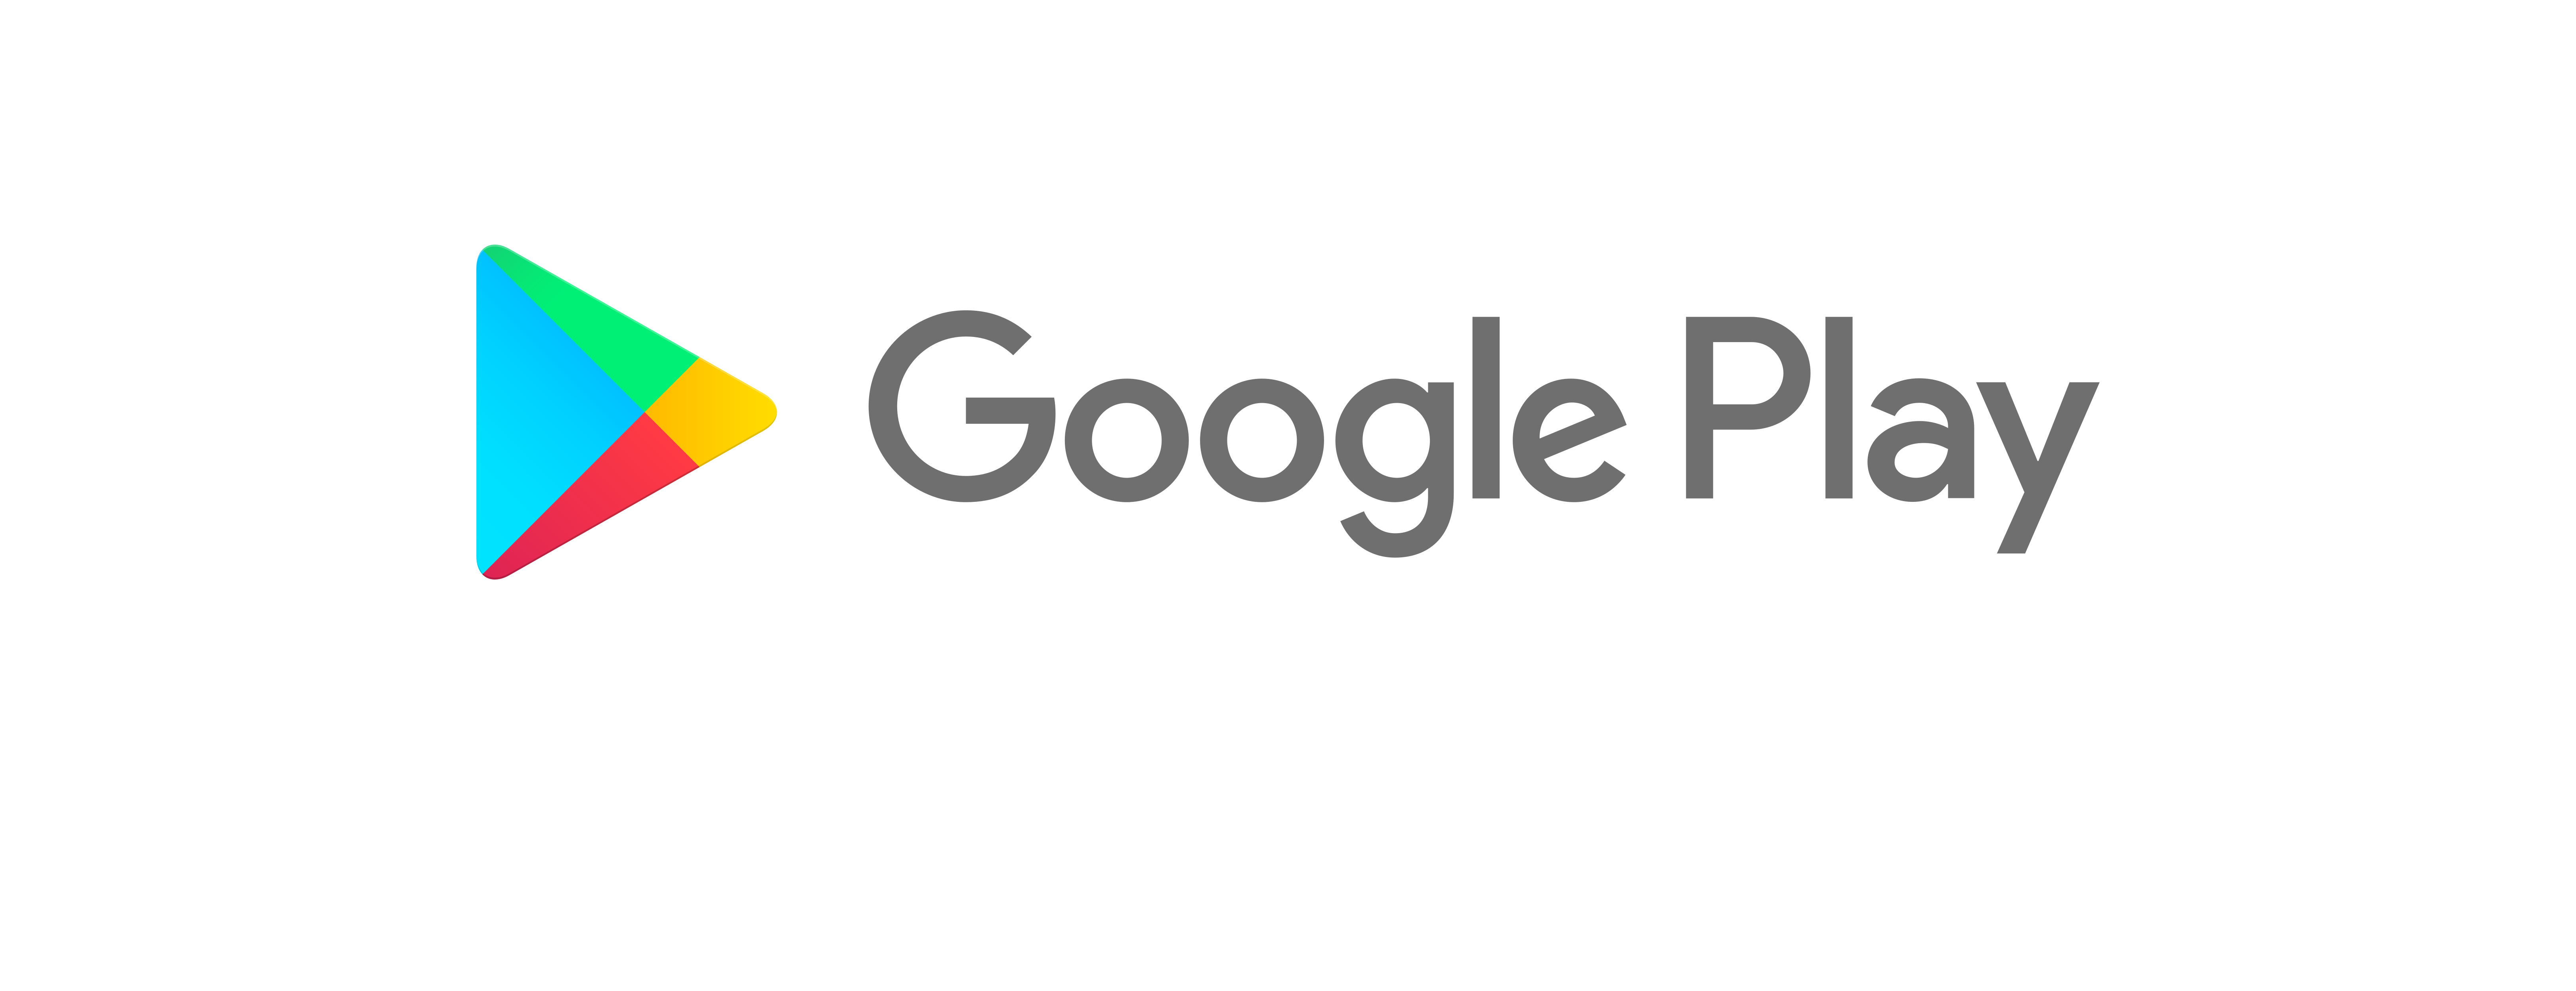 100 google play. Плей Маркет иконка. Google Play в 2001 году. Эмблемы встречающиеся в Google Play Market. Гугл плей на прозрачном фоне.